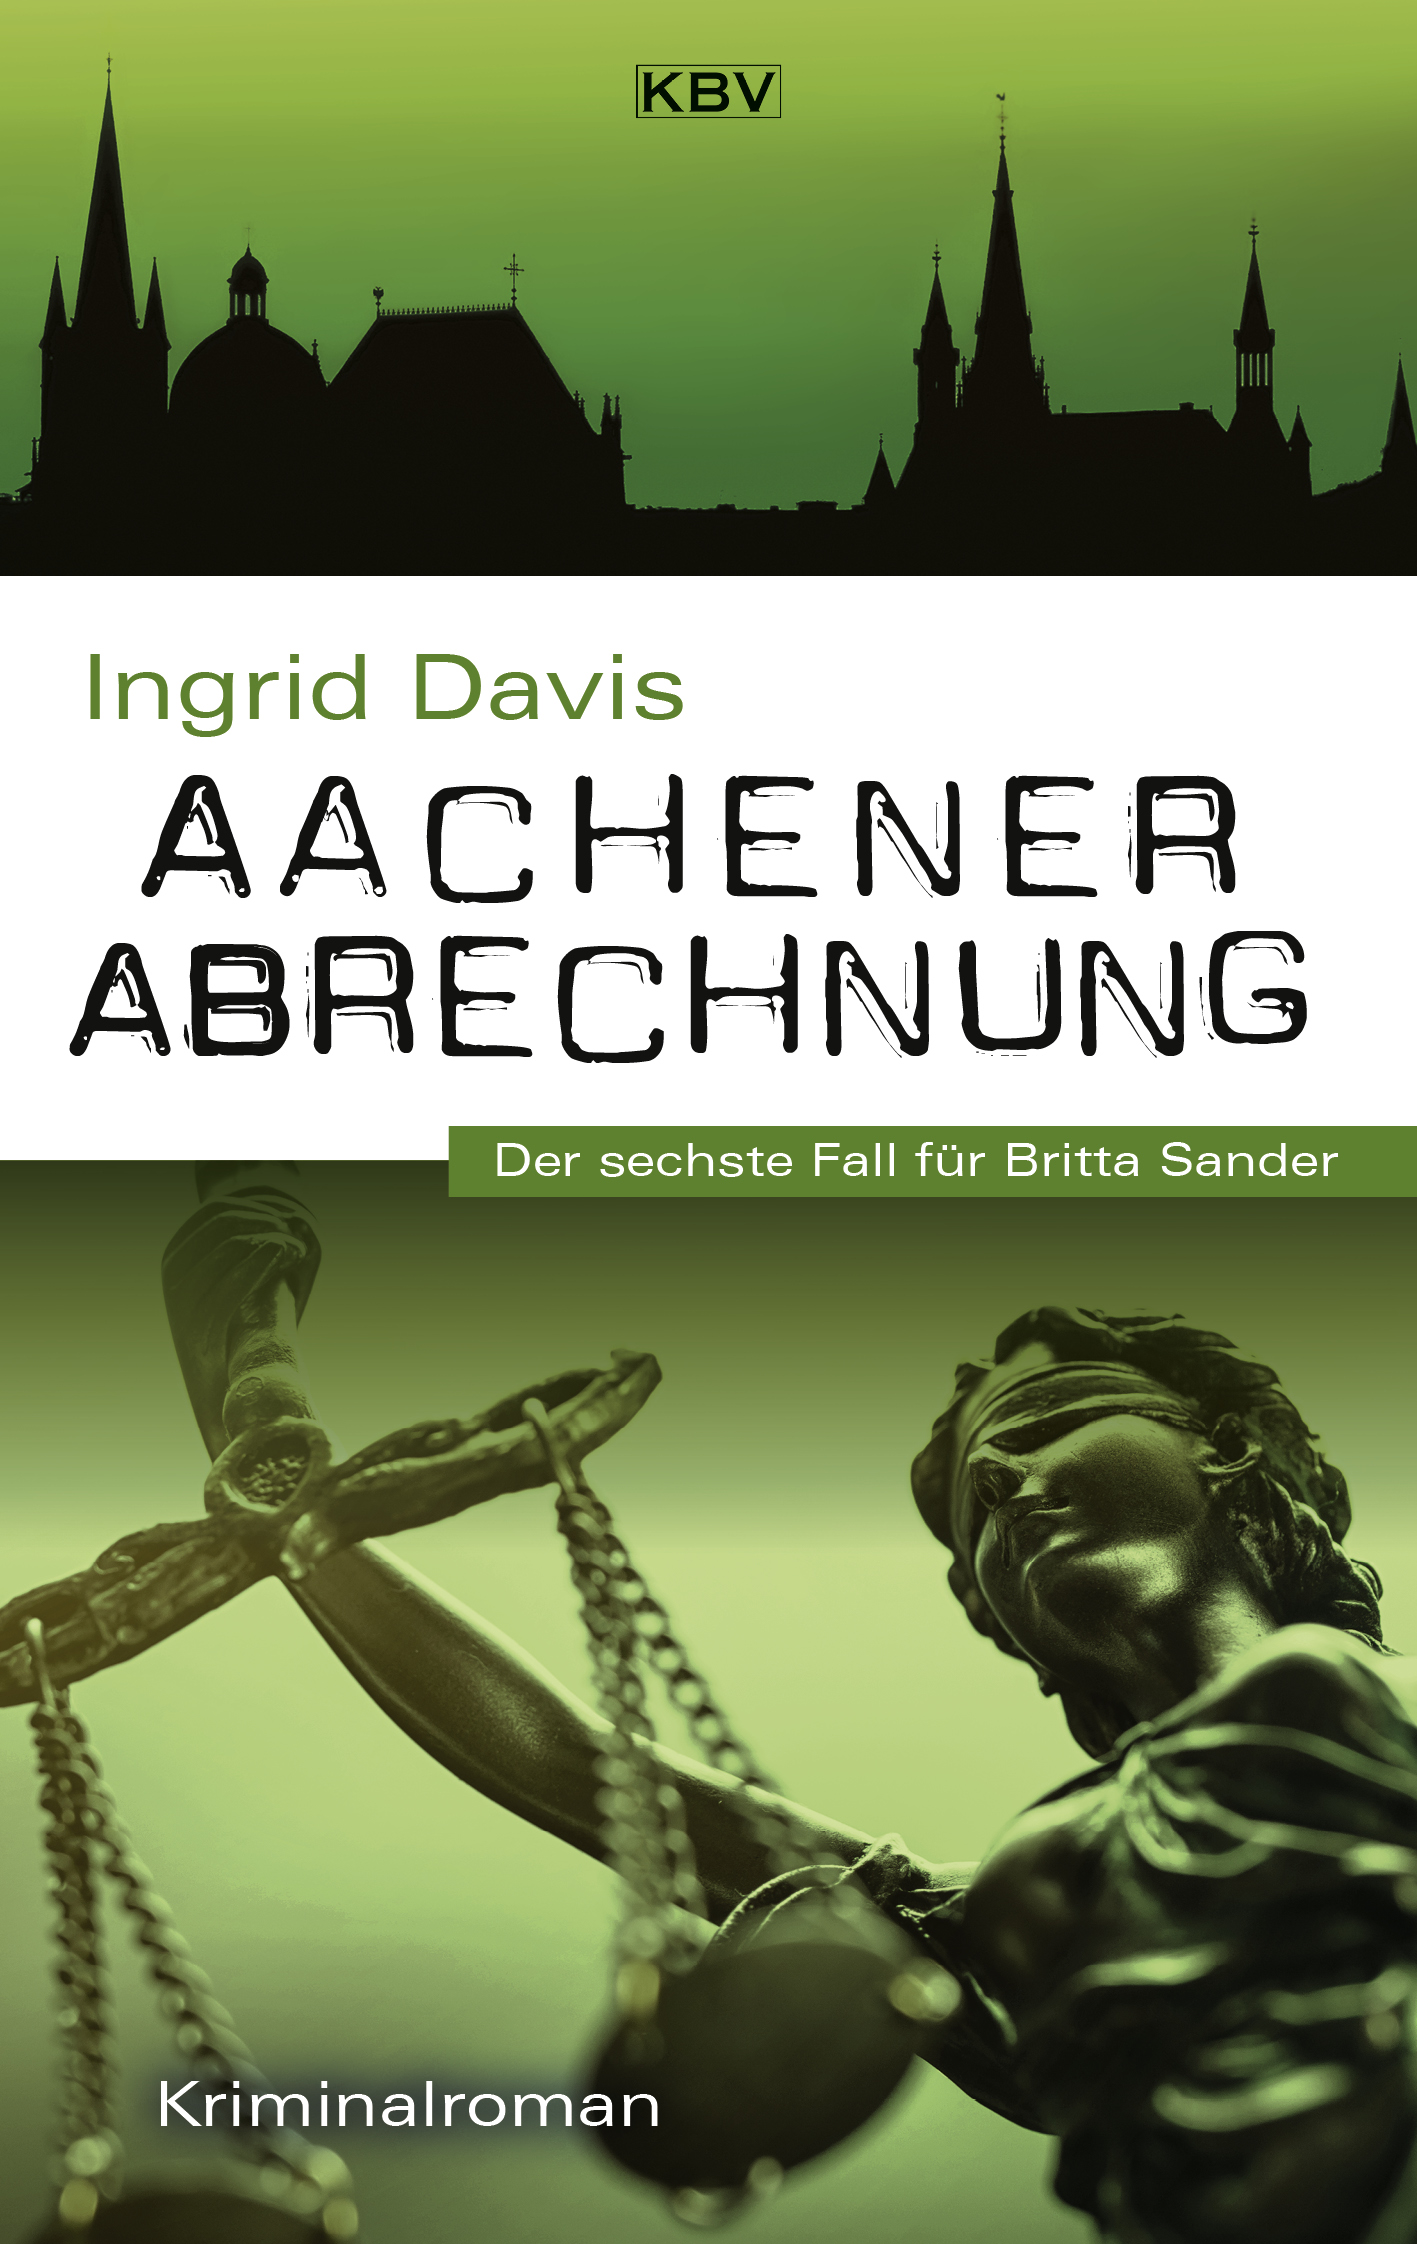 Aachener Abrechnung - Der sechste Fall für Britta Sander